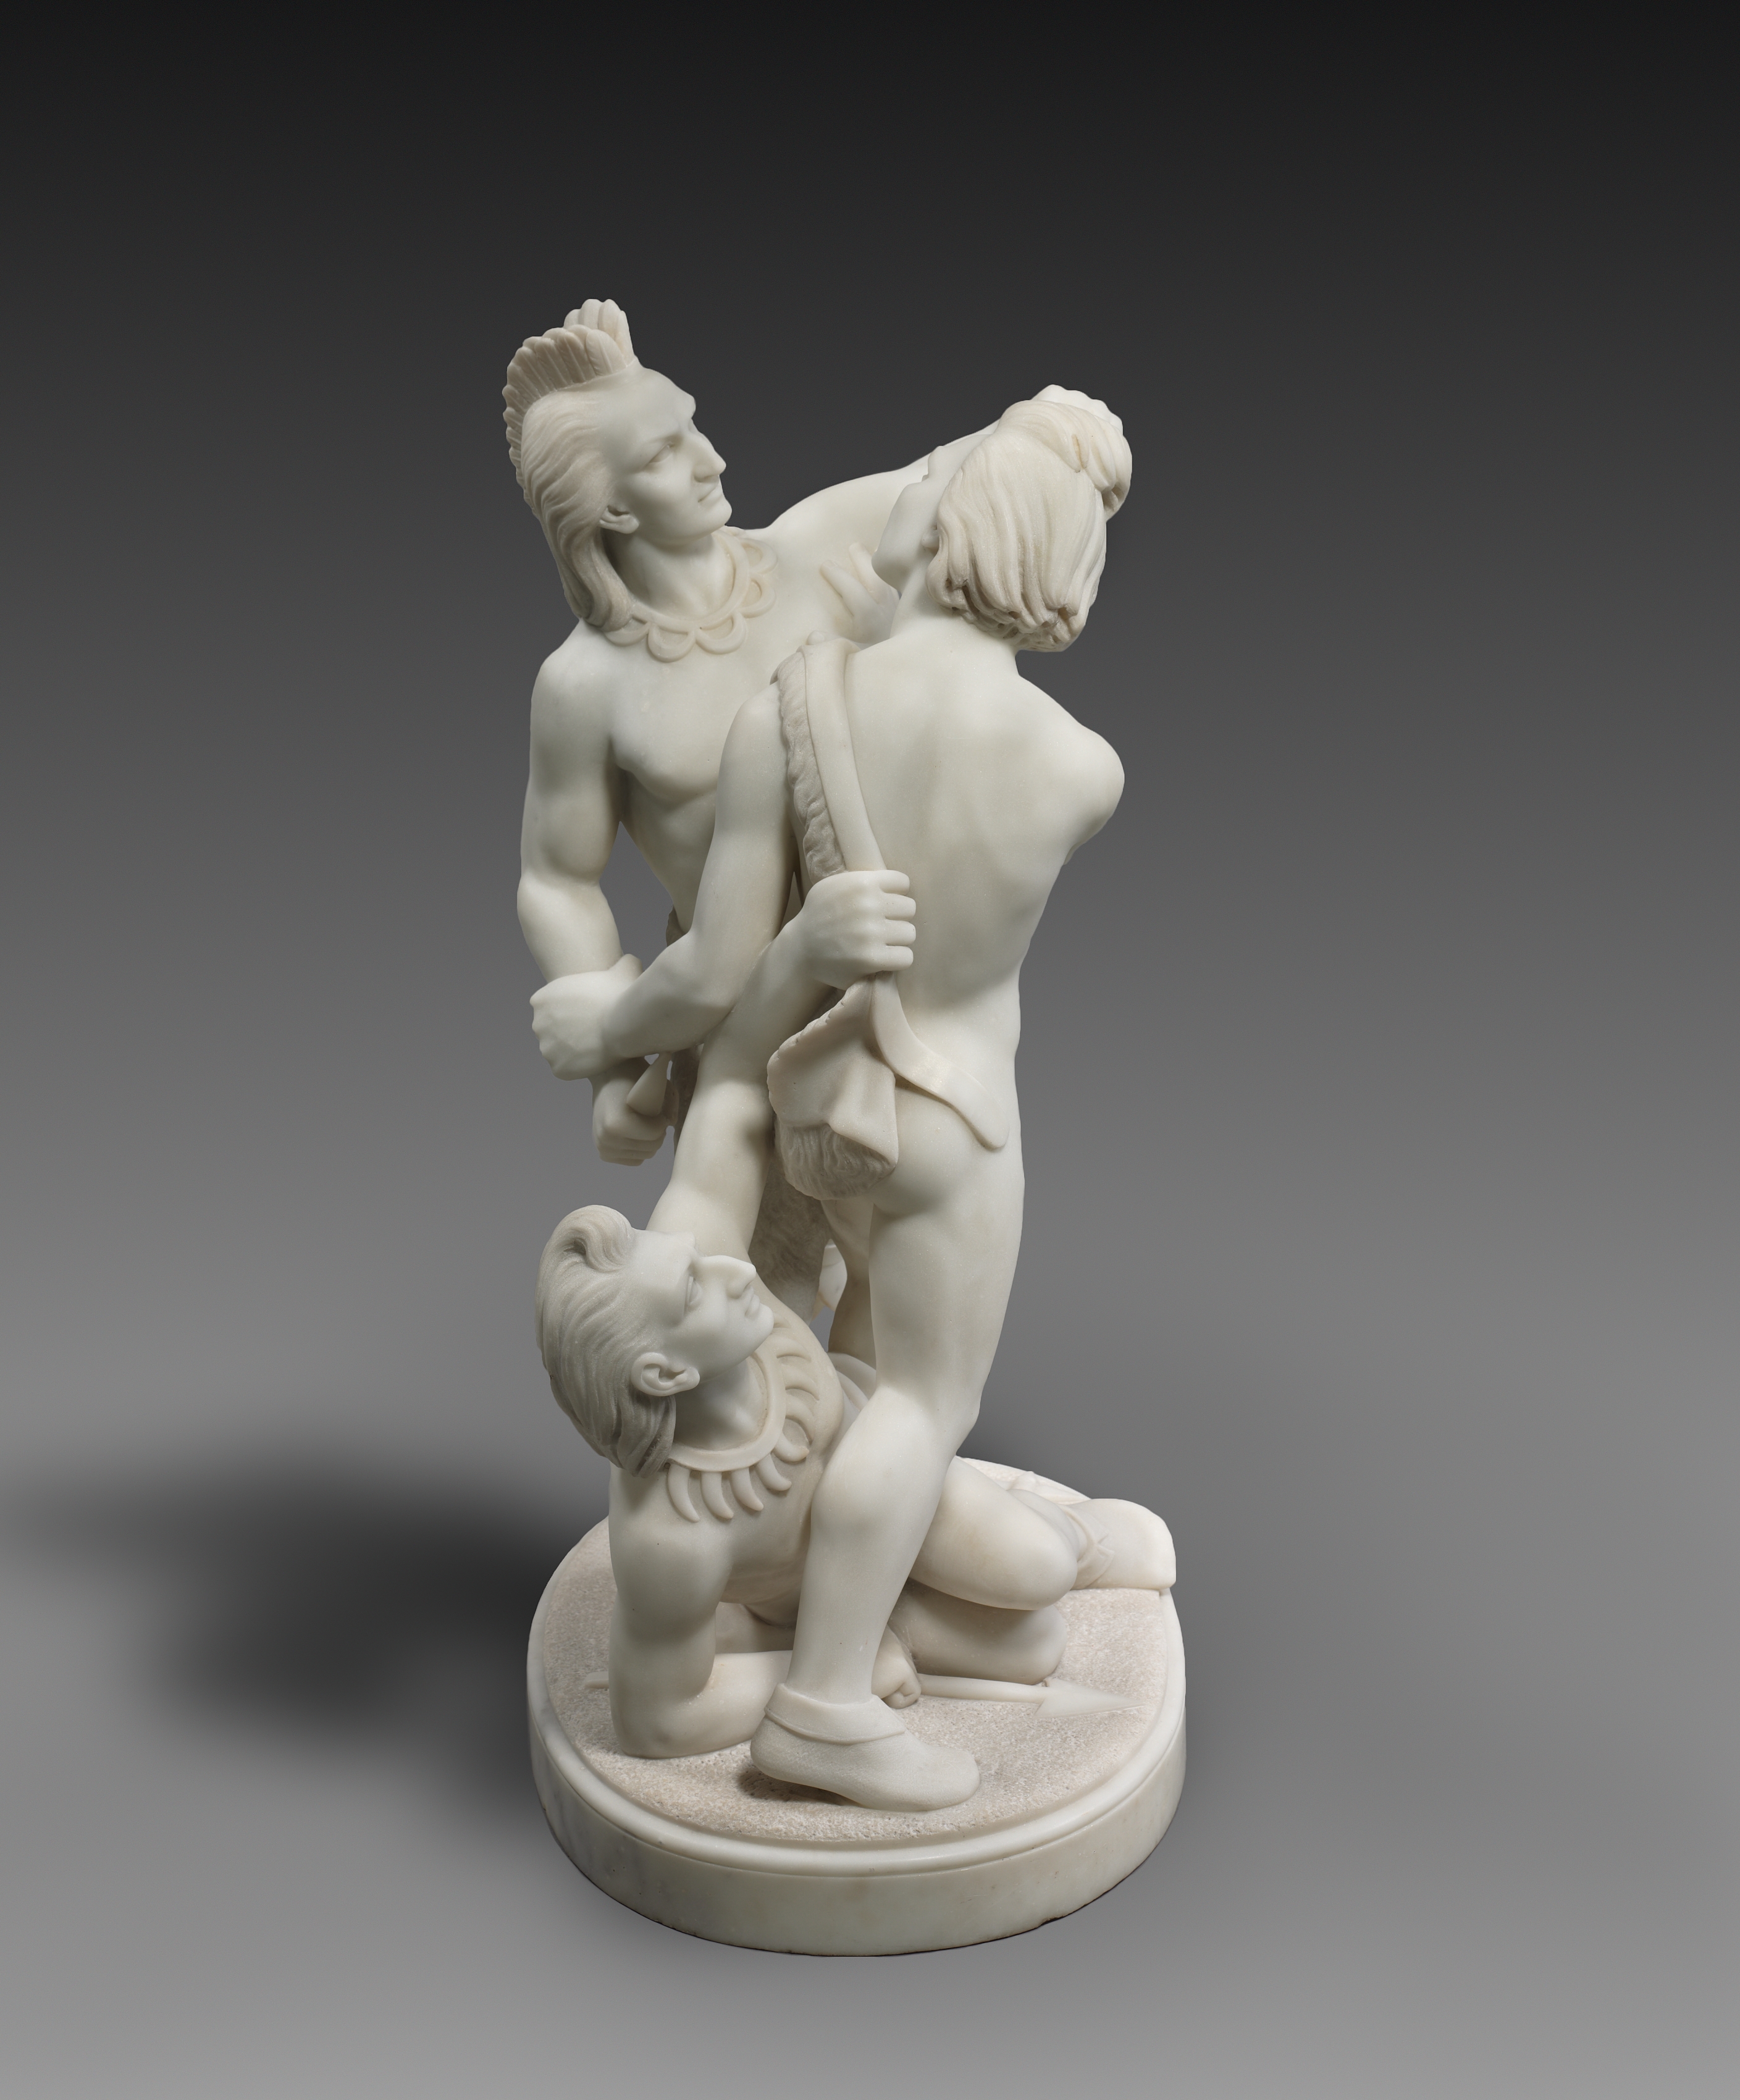 印第安的战斗 by 埃德蒙尼娅 刘易斯 - 1868 - 76.2 x 48.3 x 36.5 cm 克利夫兰艺术博物馆